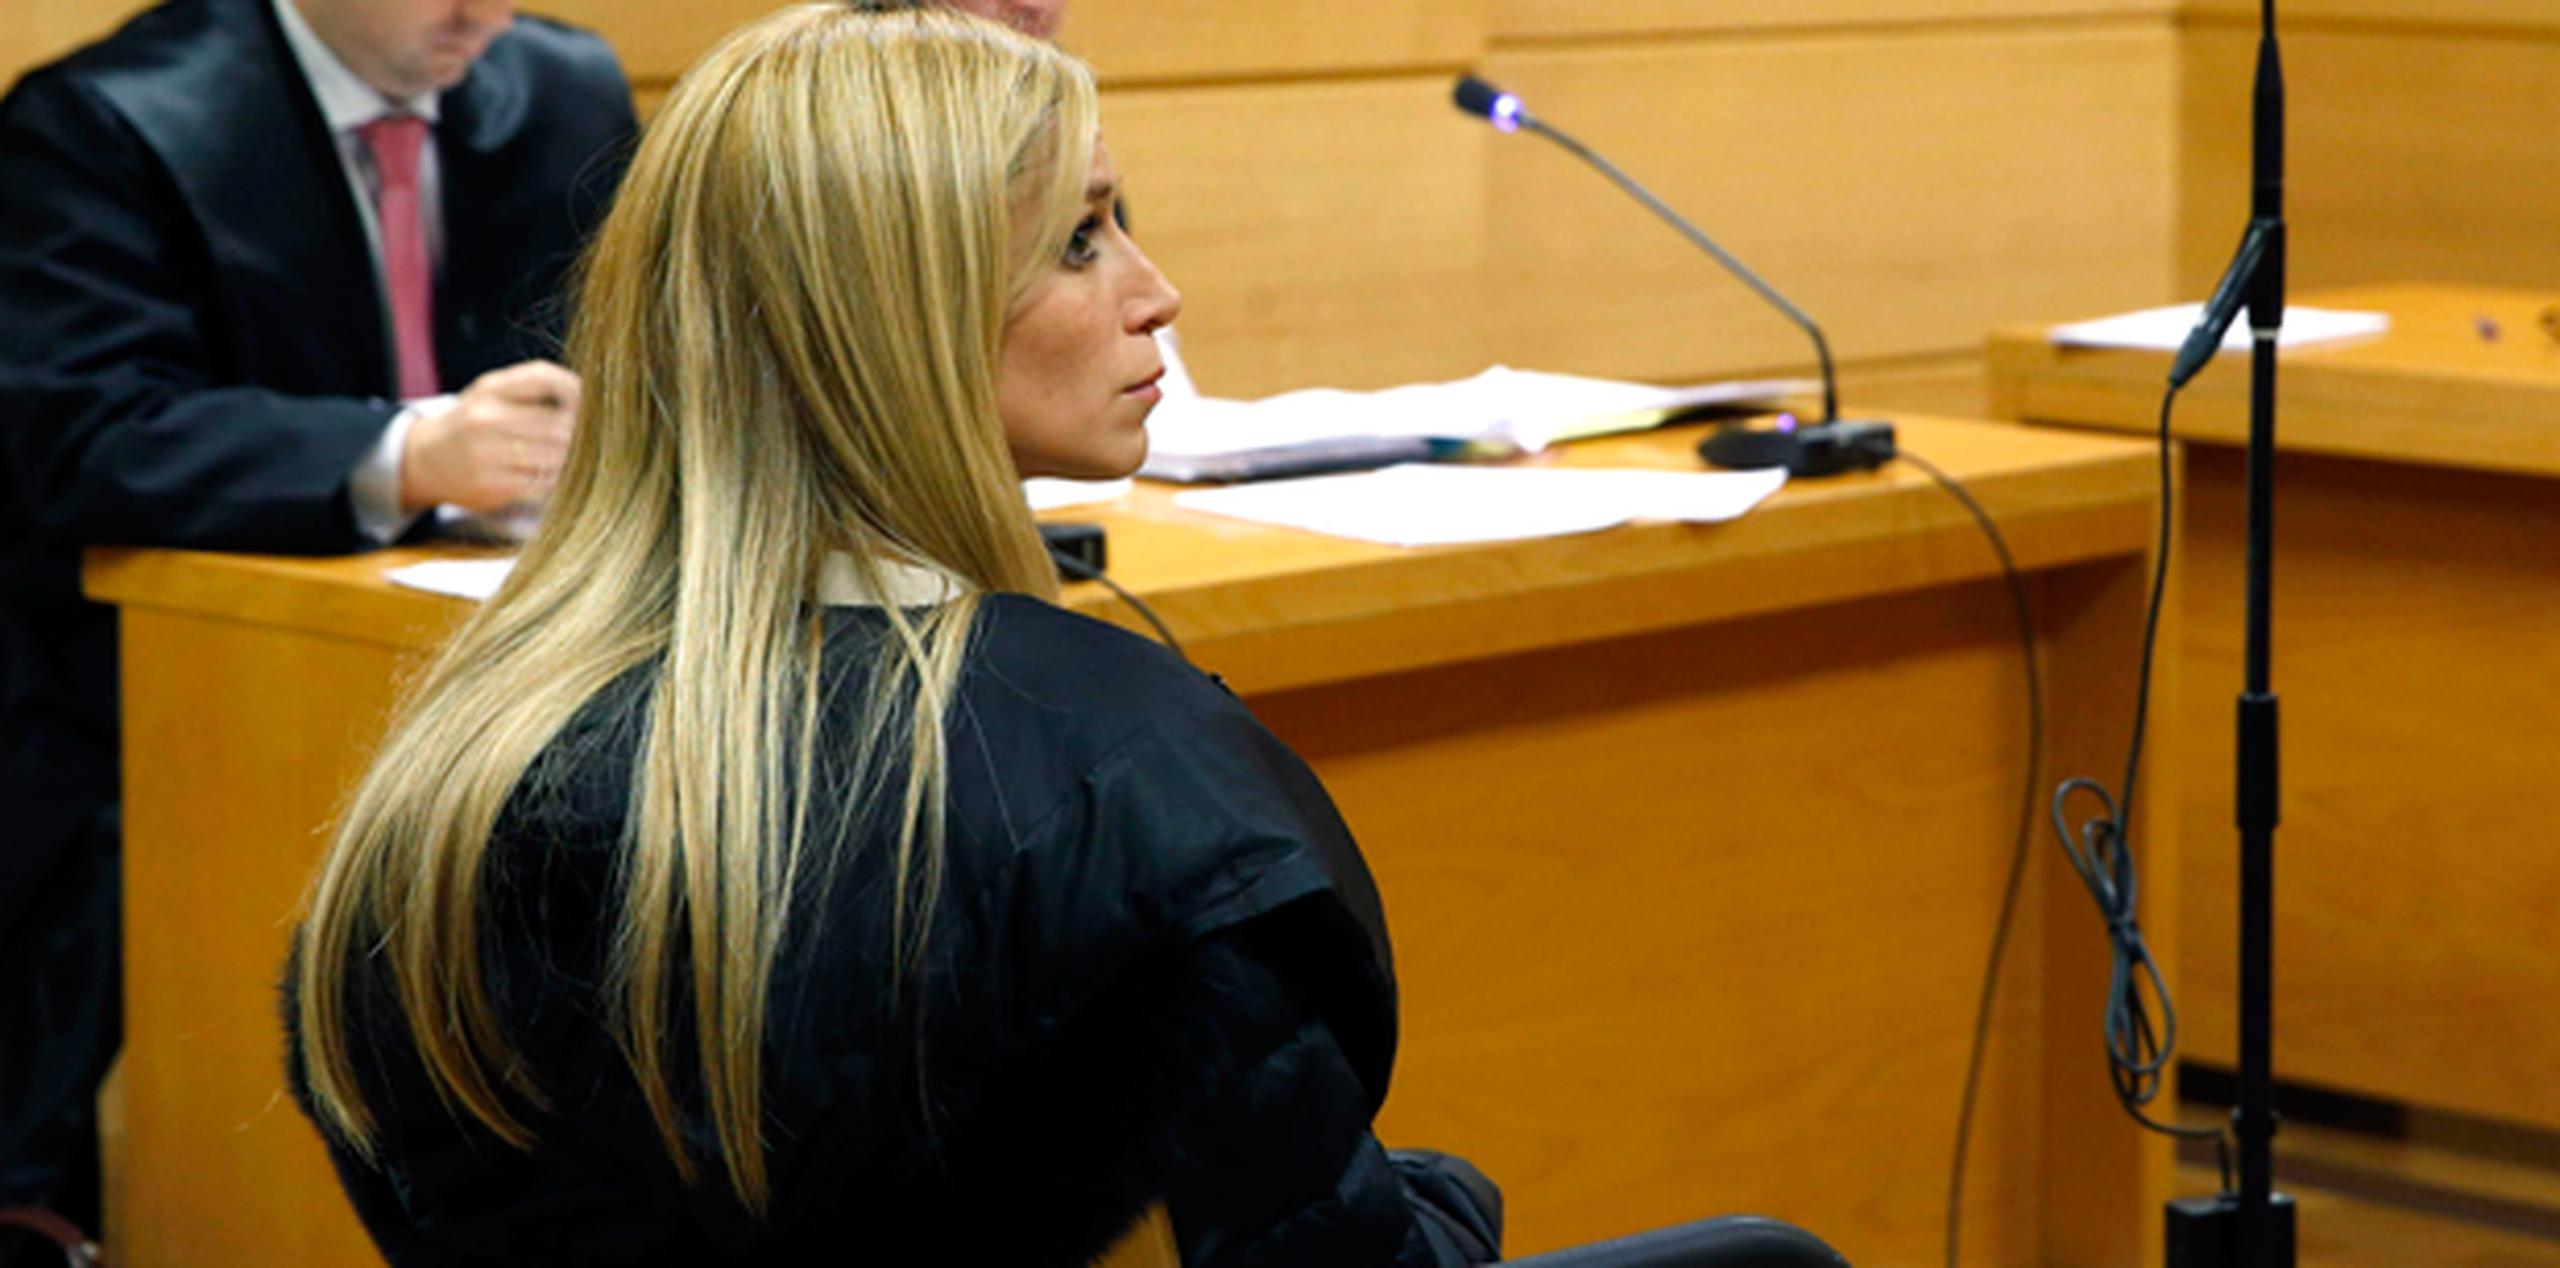 Áurea Vázquez Rijos fue acusada por un gran jurado federal en el 2008 por el asesinato por encargo de su esposo, un empresario millonario canadiense, en hechos ocurridos el 22 de septiembre de 2005 en el Viejo San Juan. (Archivo)